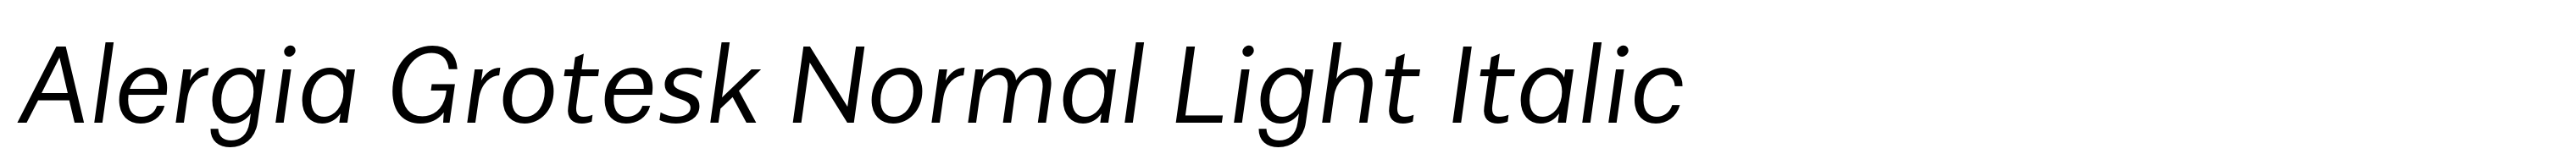 Alergia Grotesk Normal Light Italic